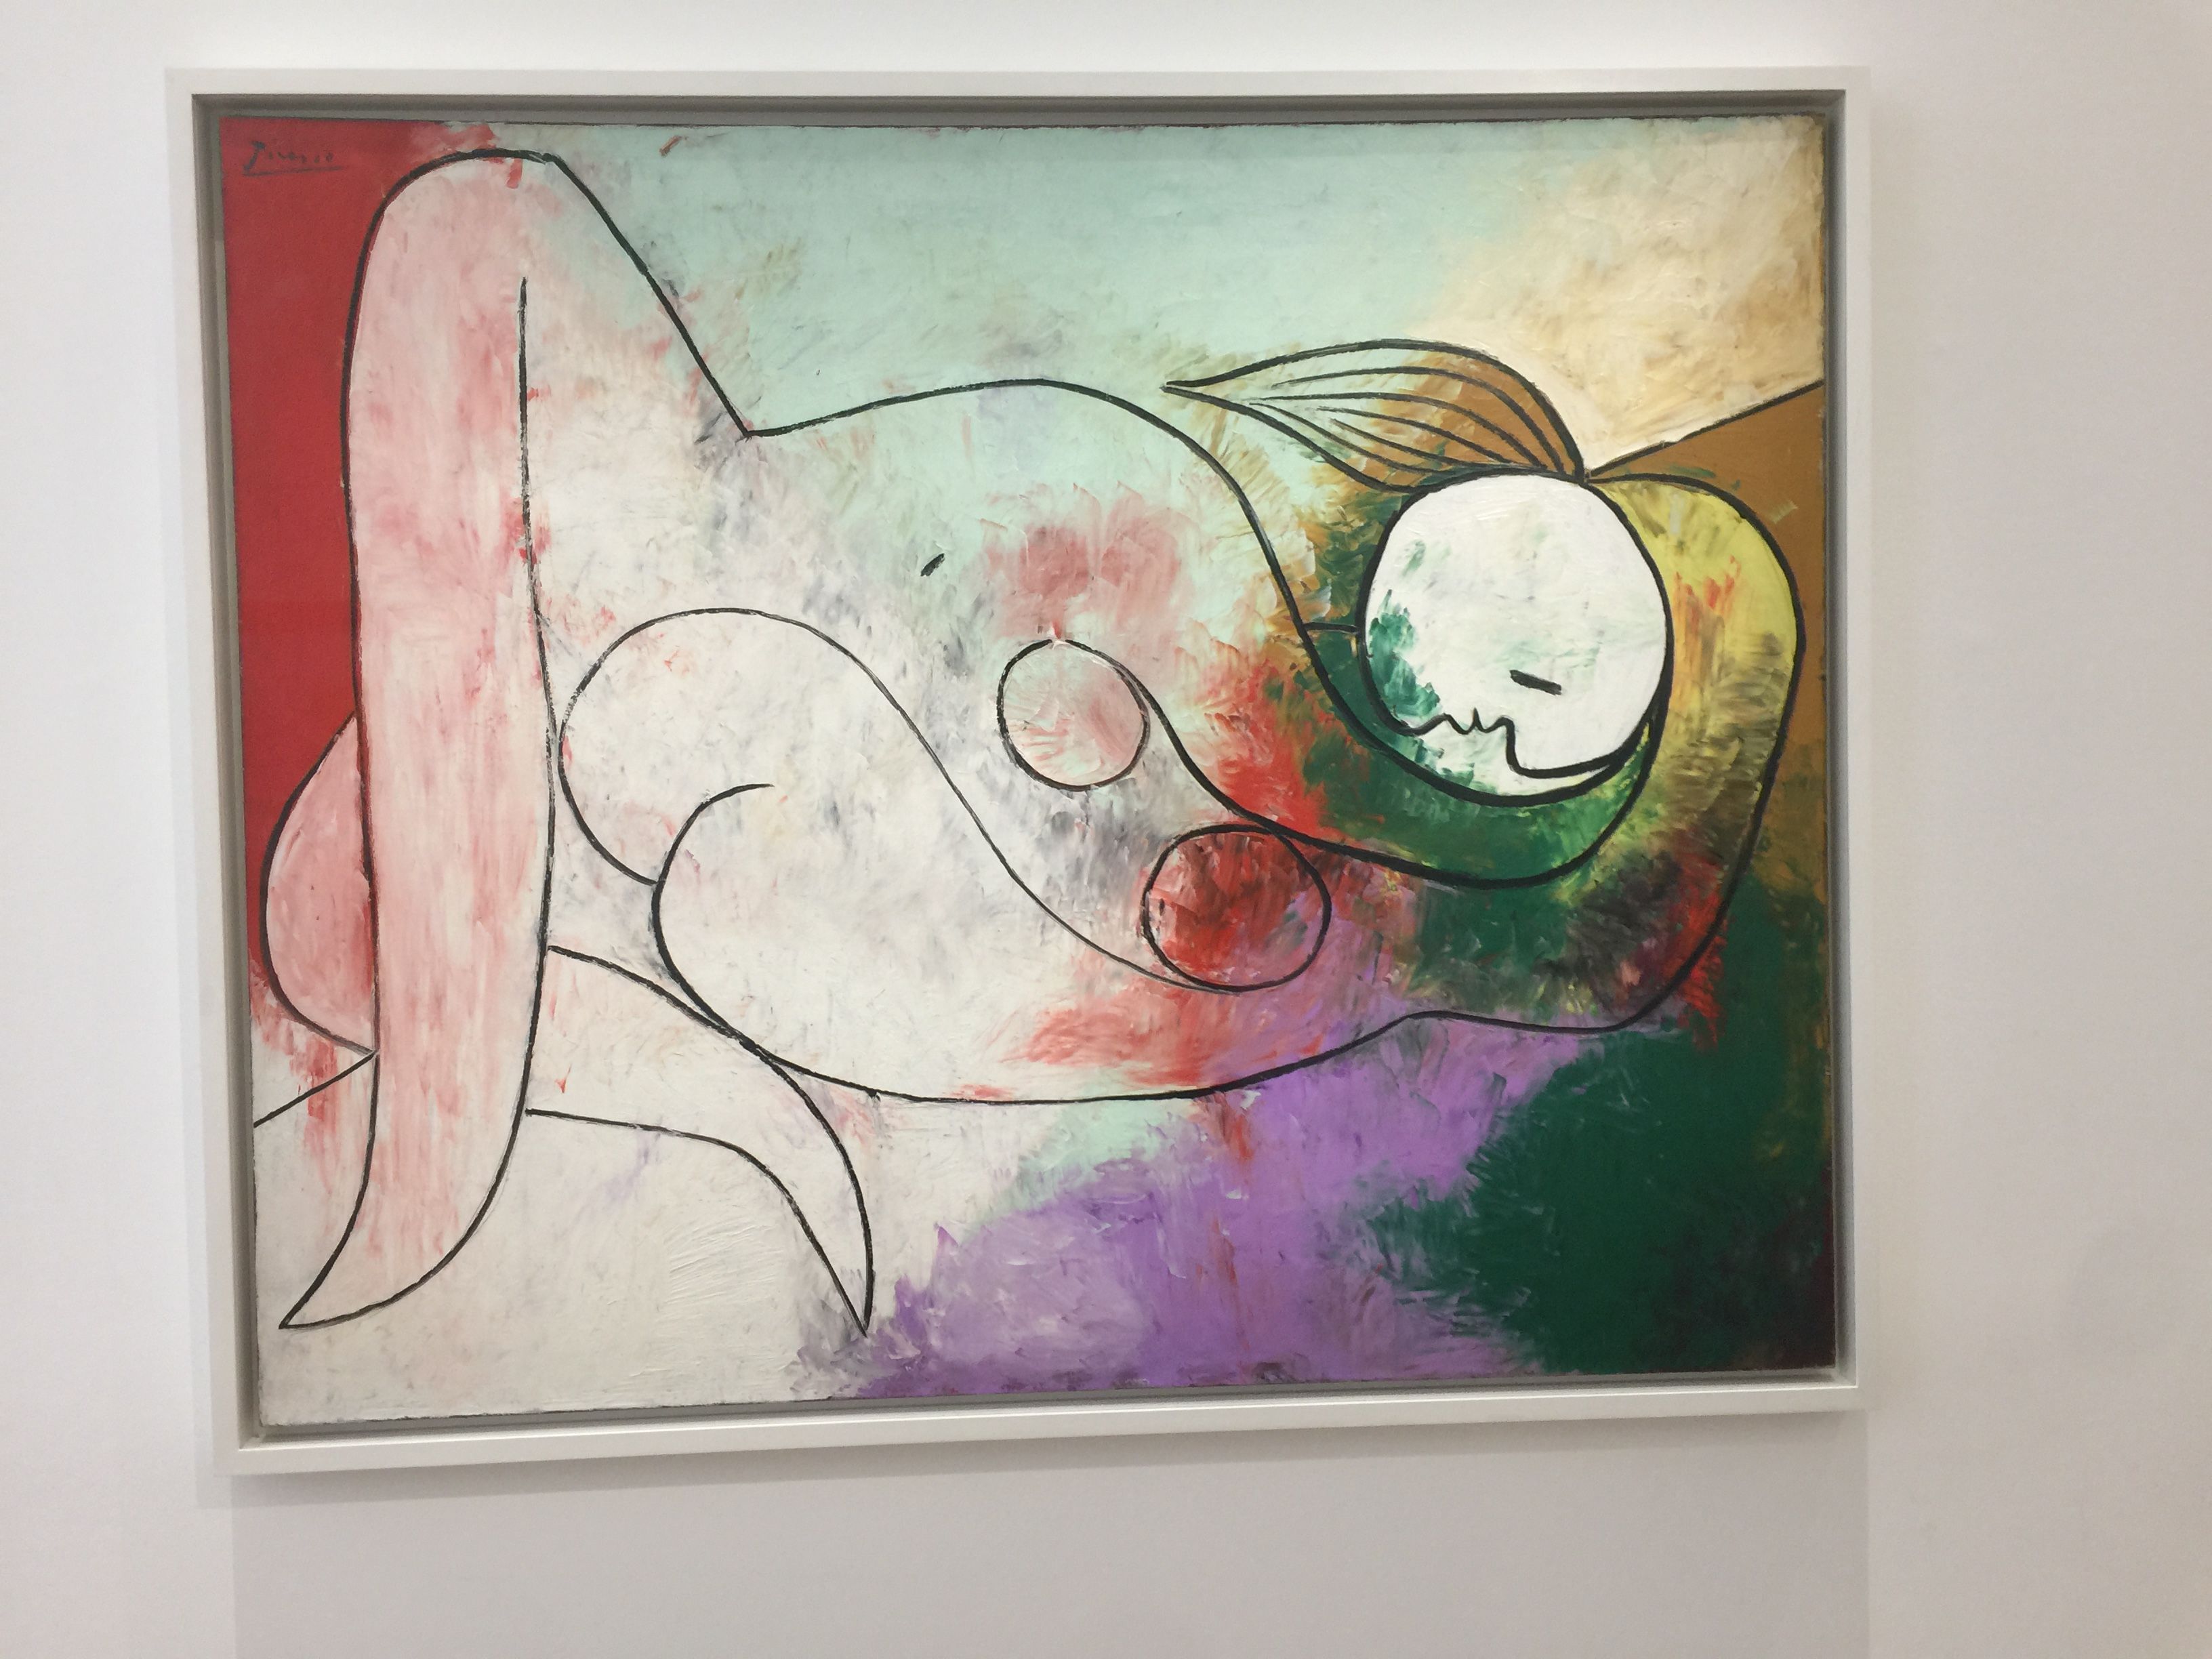 Picasso 1932, Erotic Year Exhibition, Picasso Museum, Paris: 10 October 2017-11 February 2018